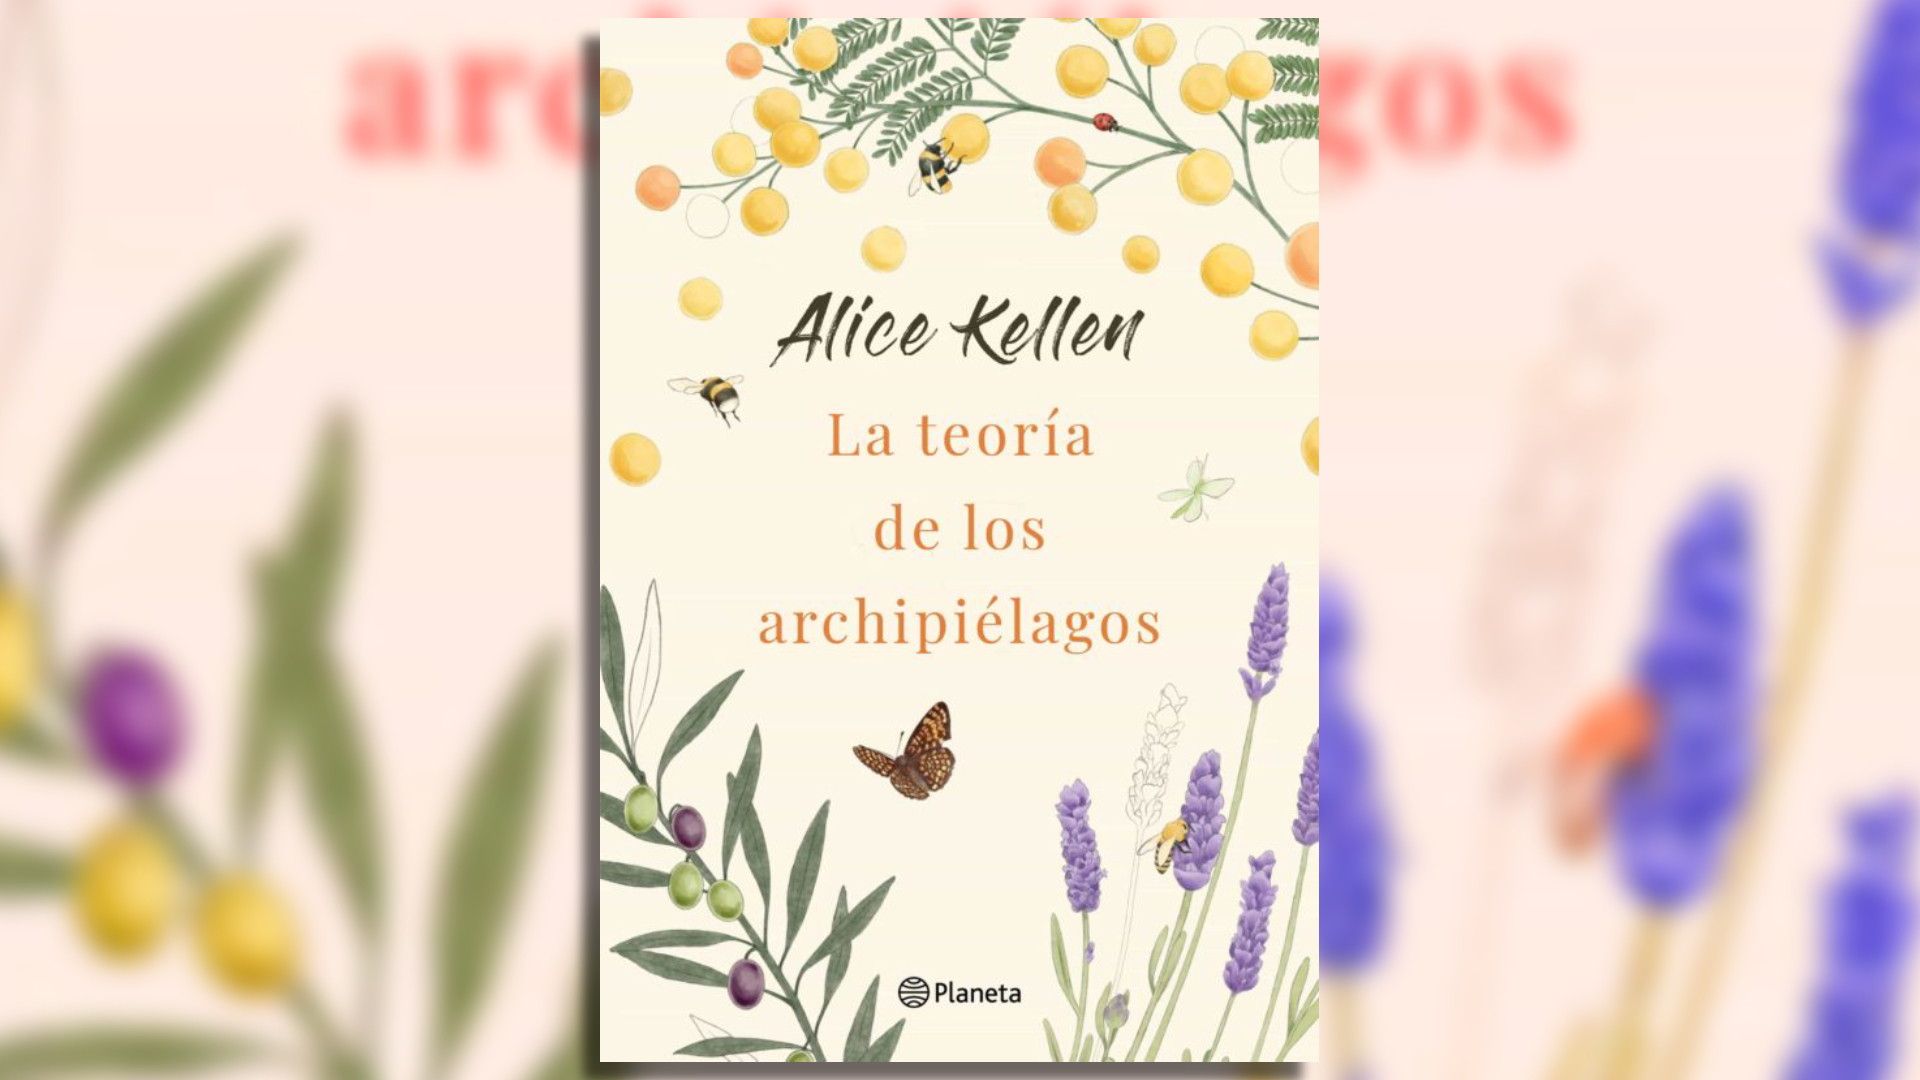 "La teoría de los archipiélagos" - Alice Kellen